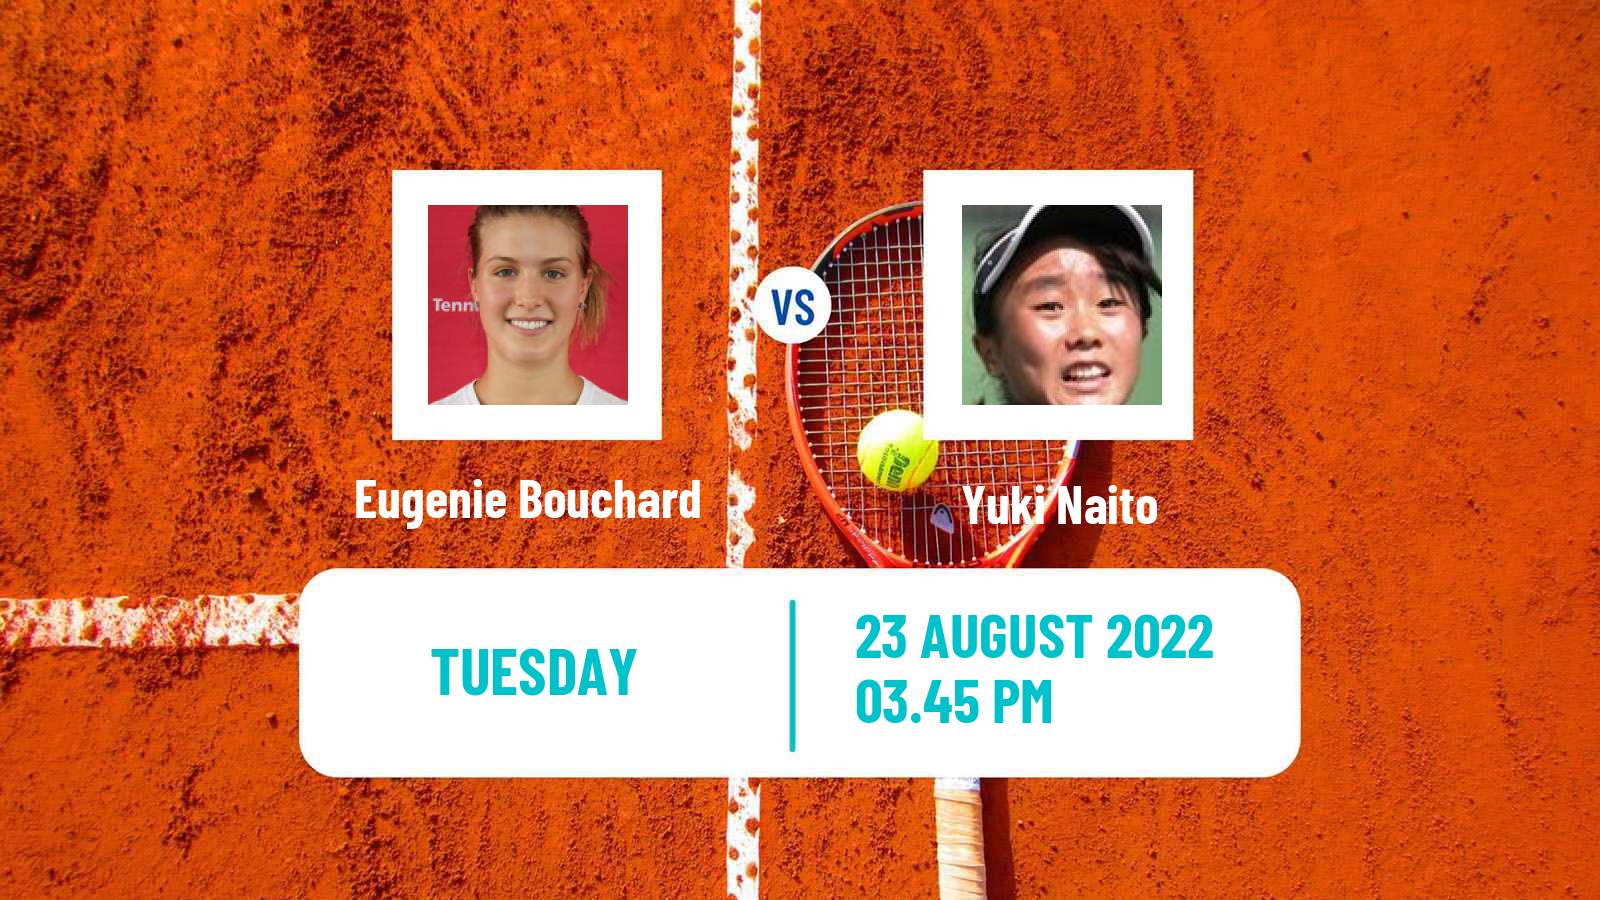 Tennis WTA US Open Eugenie Bouchard - Yuki Naito